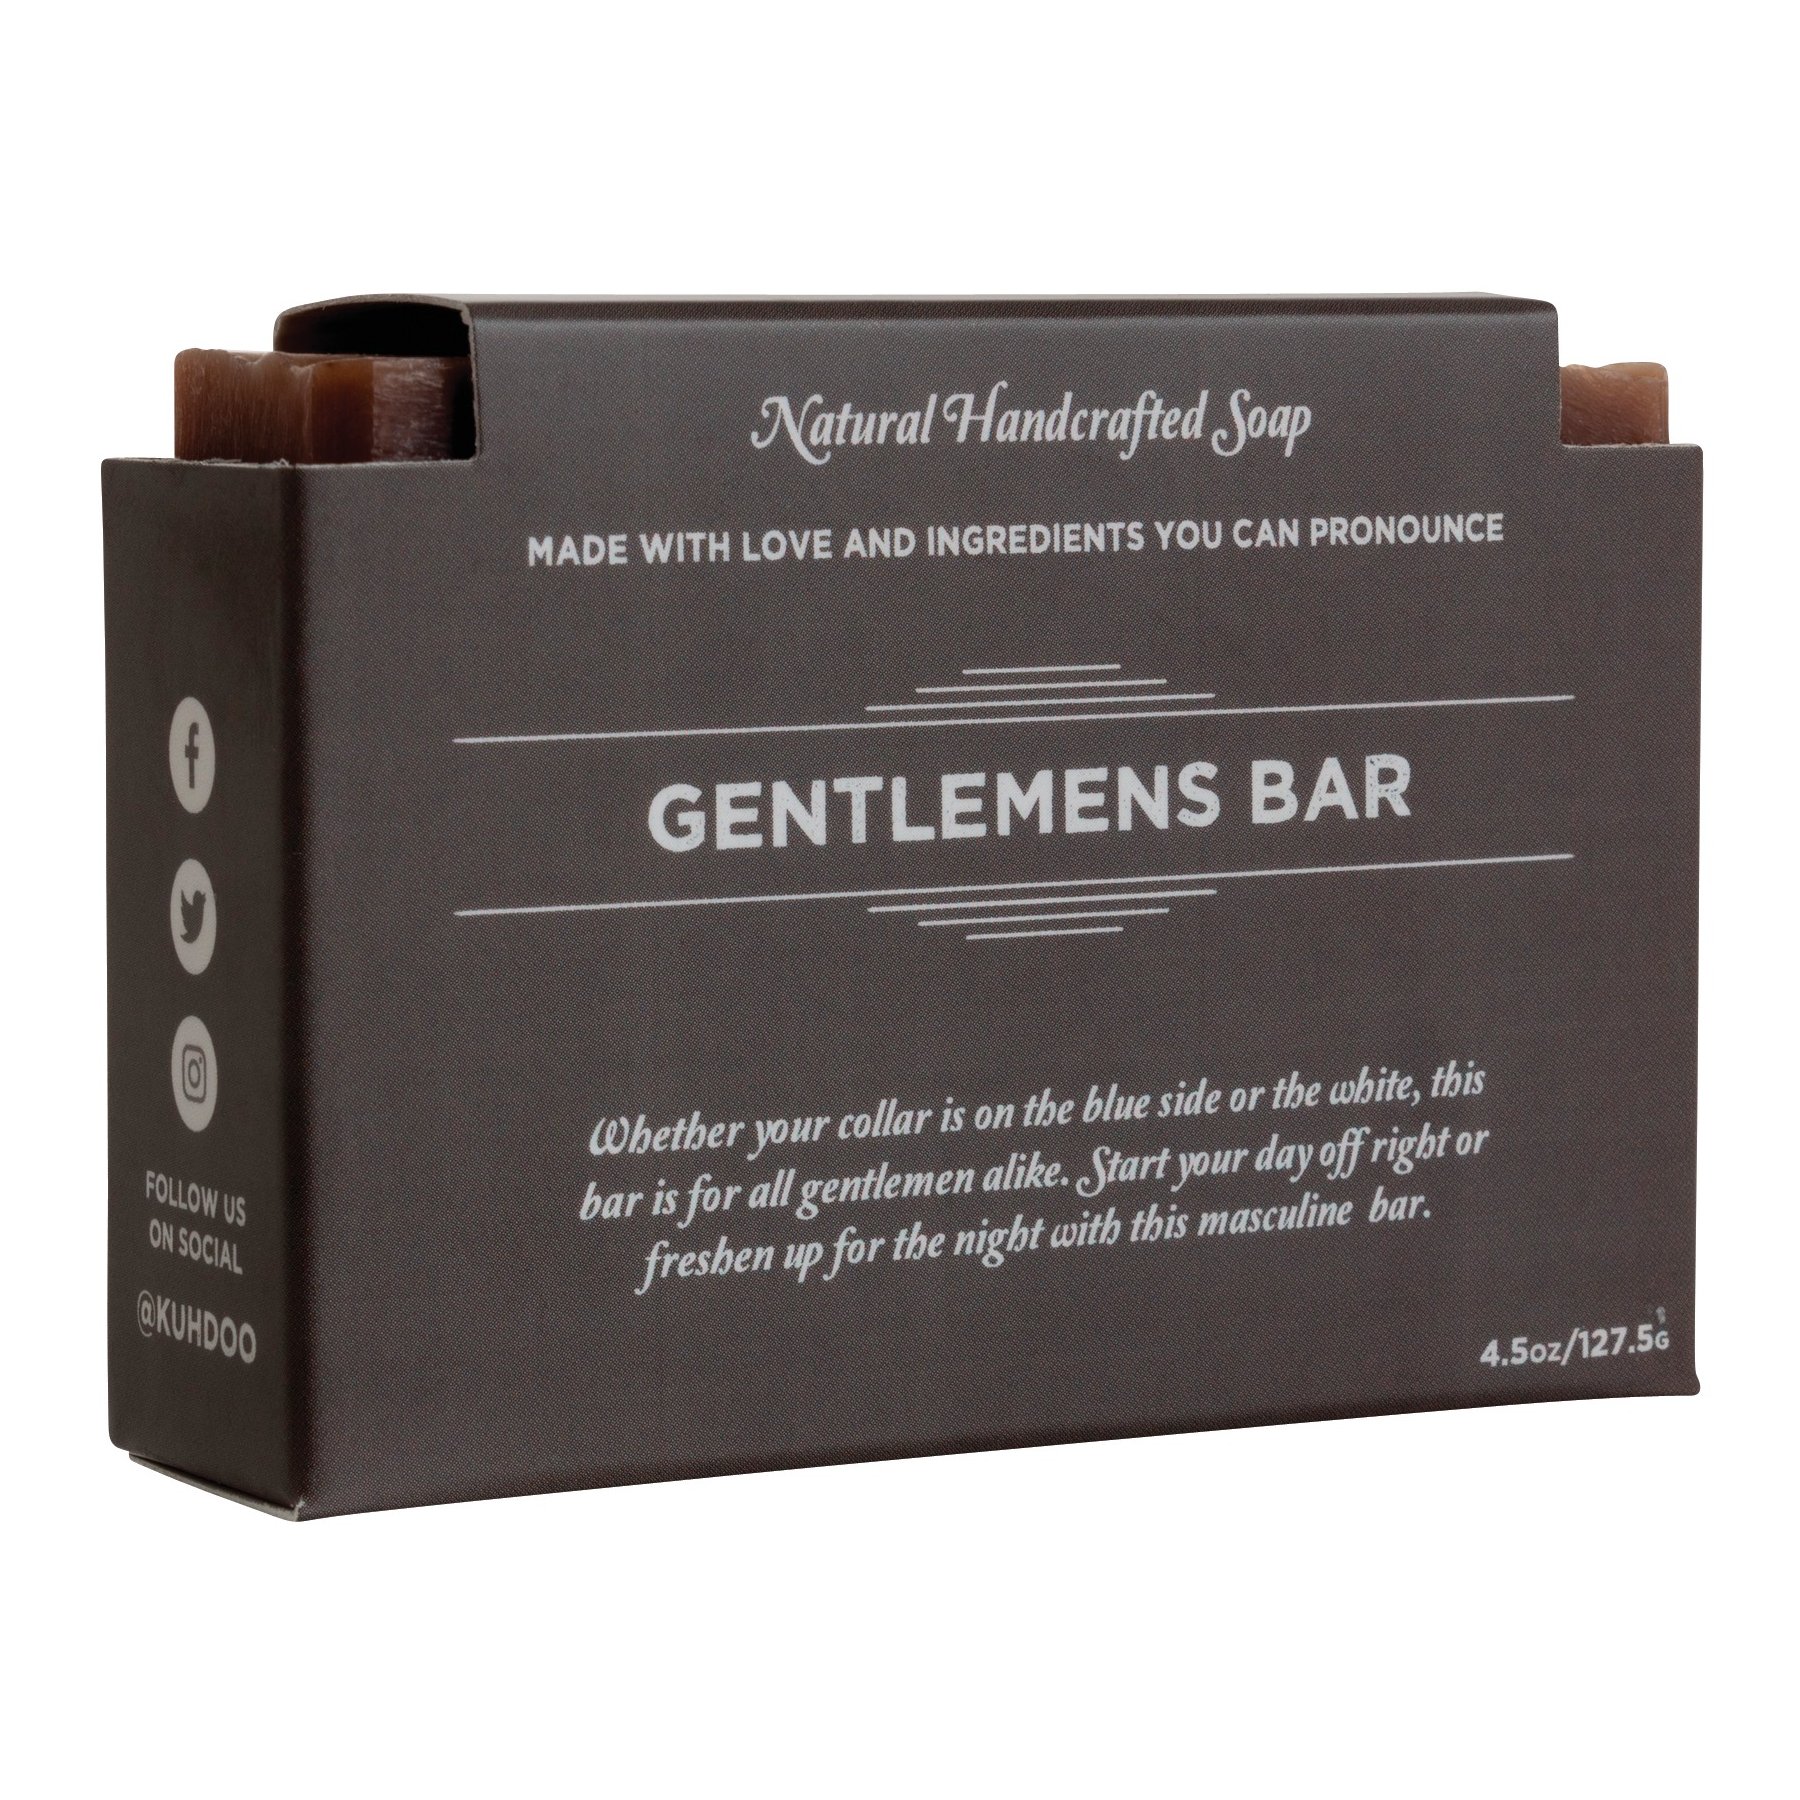 Kuhdoo Gentlemens Bar Soap - Shop Hand & Bar Soap at H-E-B